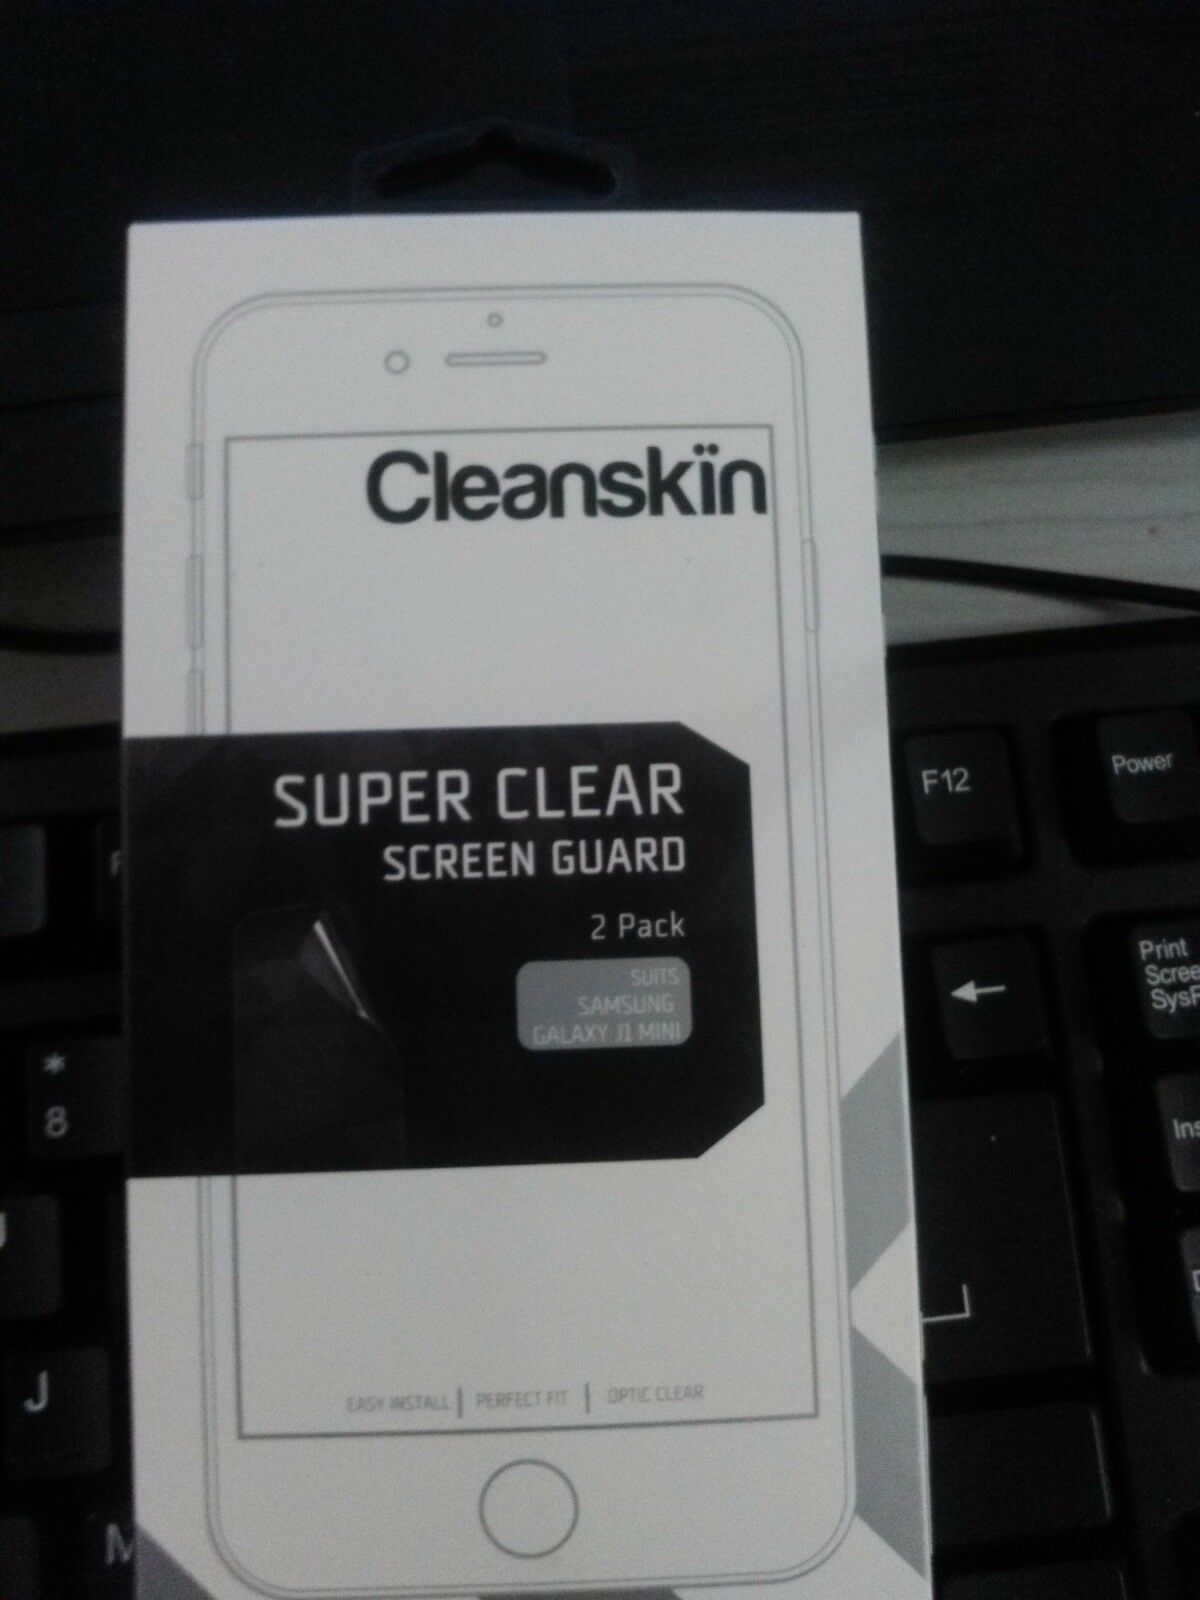 New Samsung Galaxy J1 Mini Super Clear Screen Guard - (2 Pack)